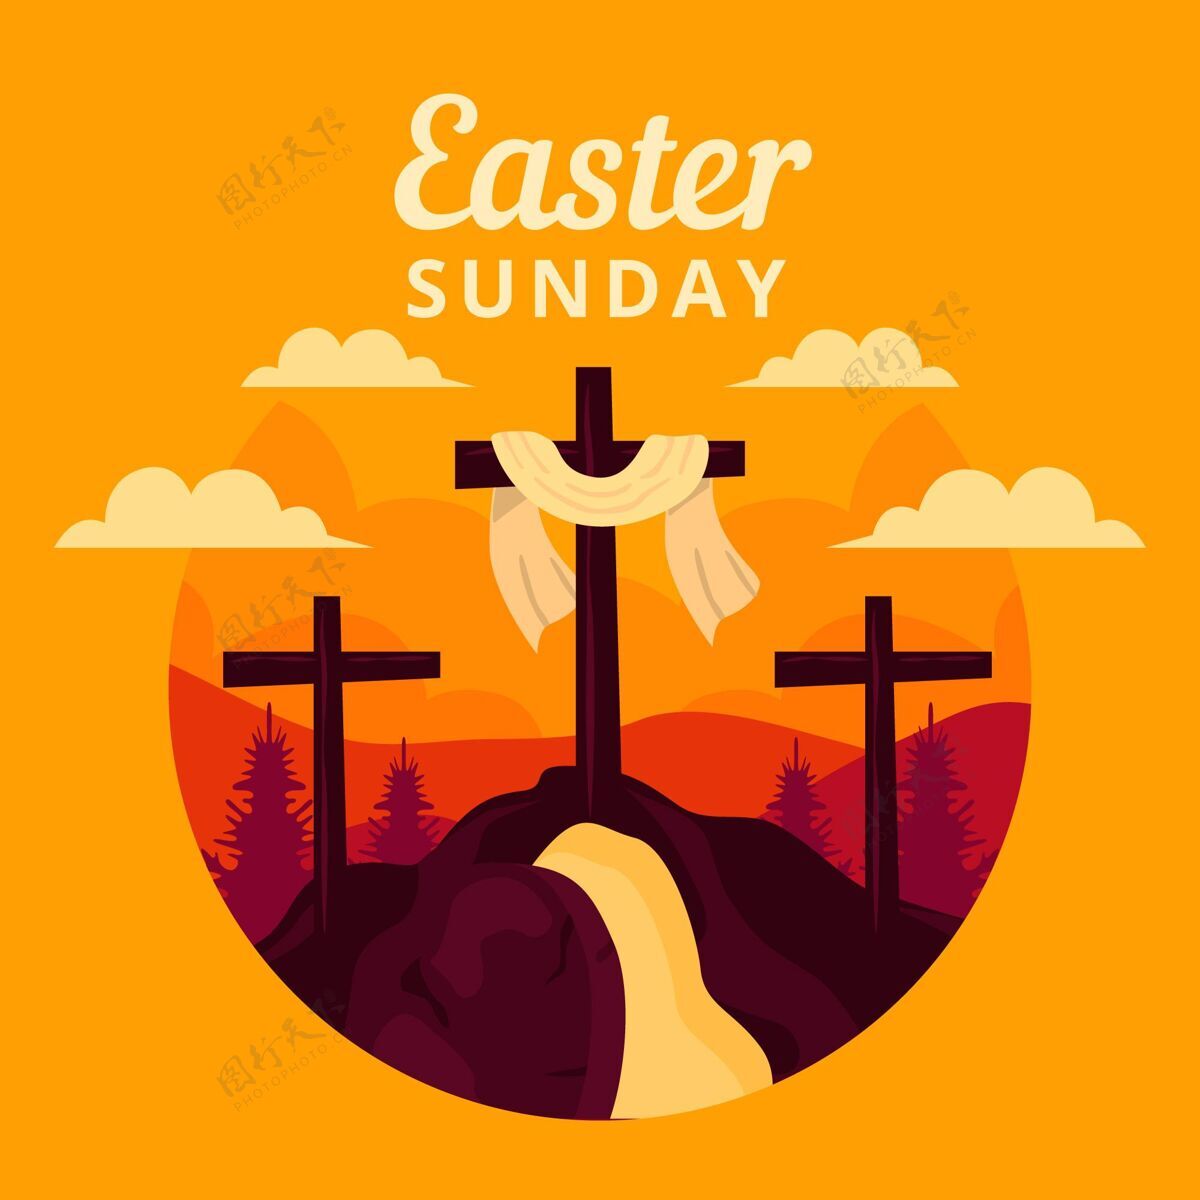 上帝平复活节星期天插图复活节帕夏复活